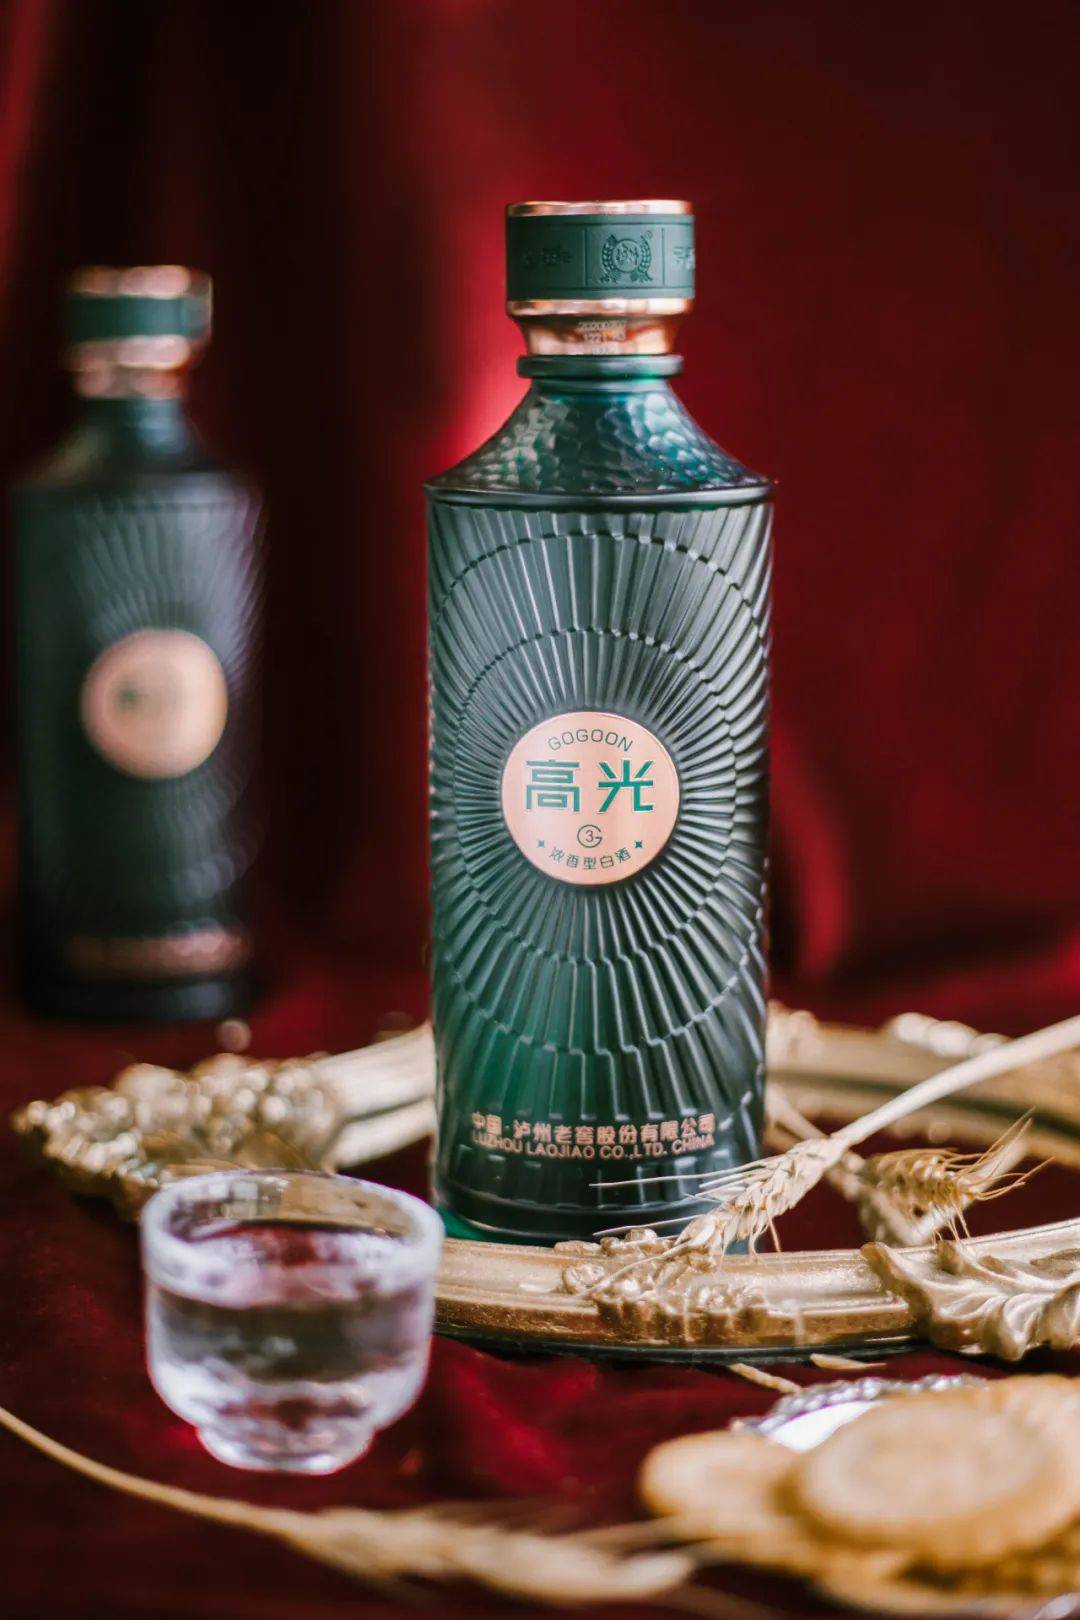 "高光"是中国著名白酒品牌泸州老窖推出的一款新轻奢主义白酒.